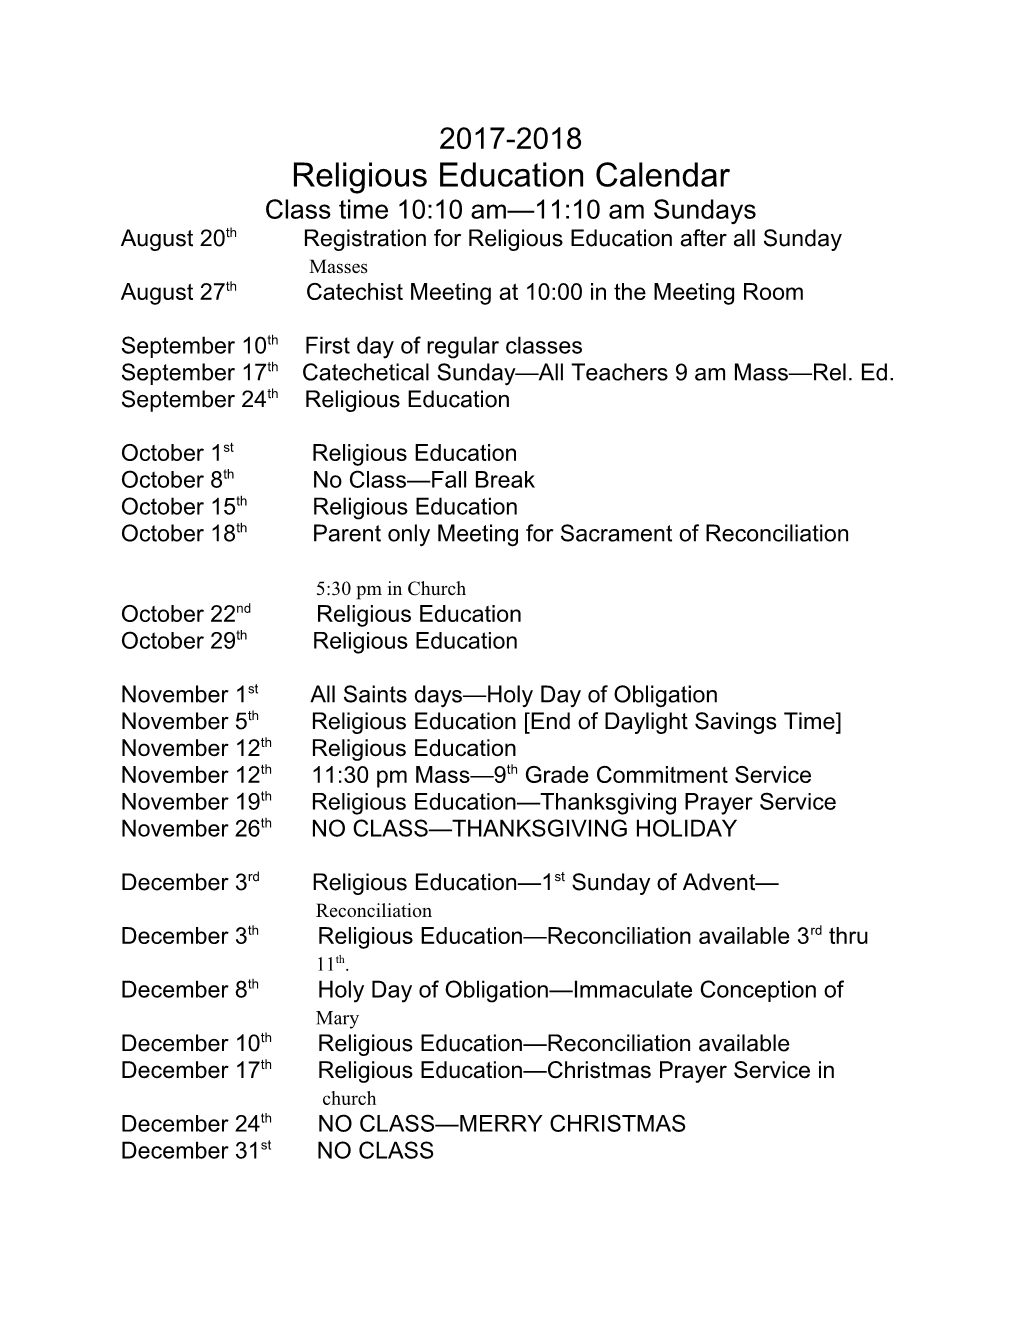 Religious Education Calendar